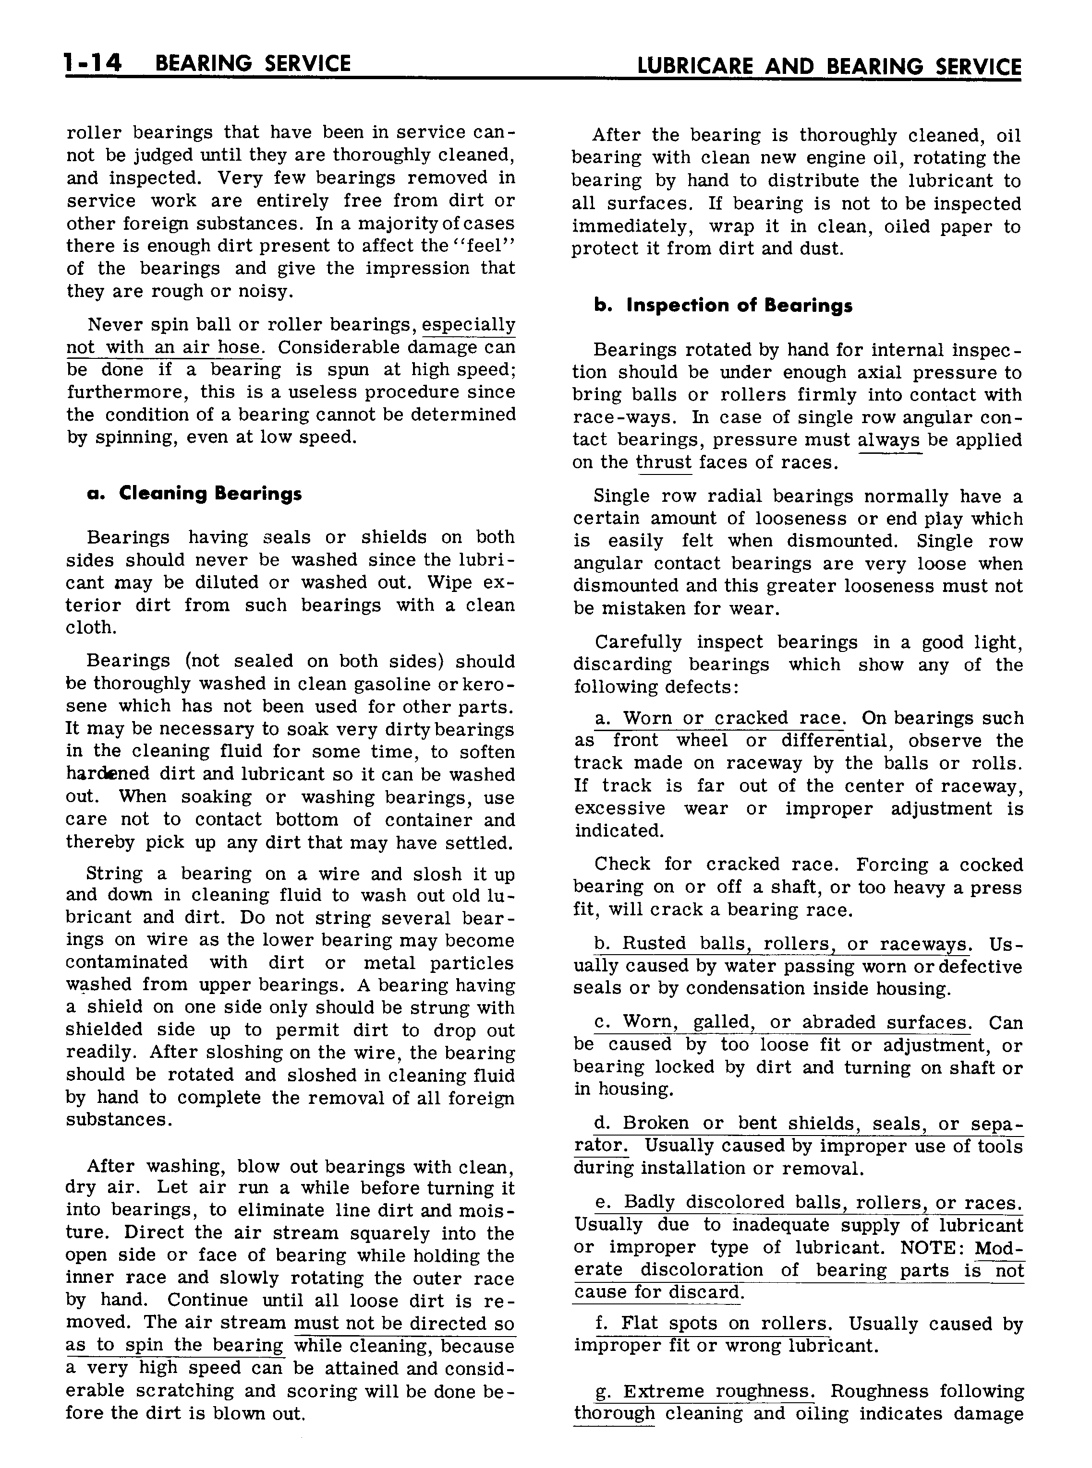 n_02 1961 Buick Shop Manual - Lubricare-014-014.jpg